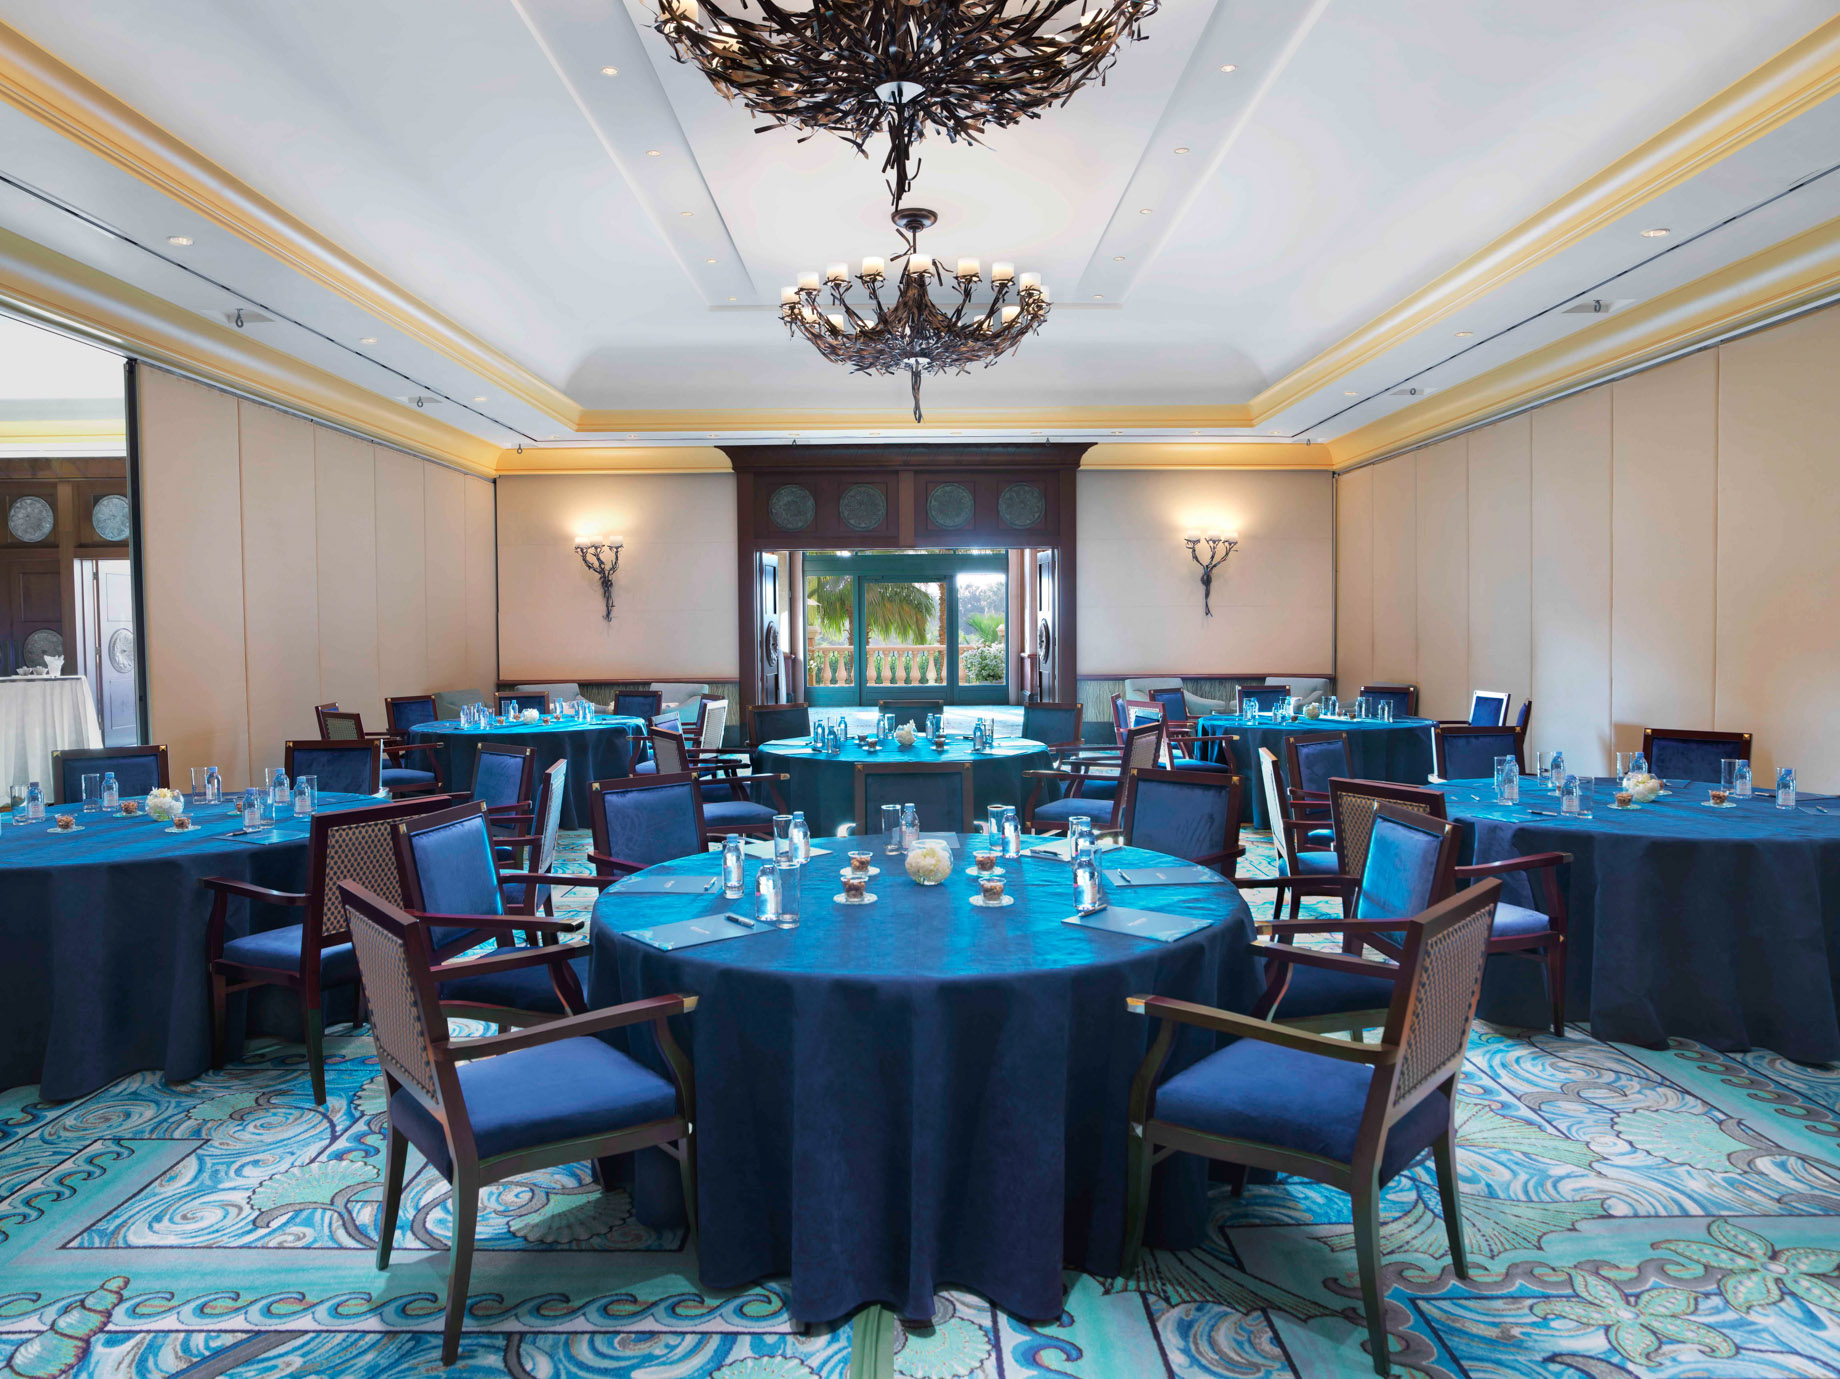 Atlantis The Palm Resort – Crescent Rd, Dubai, UAE – Spice Ballroom